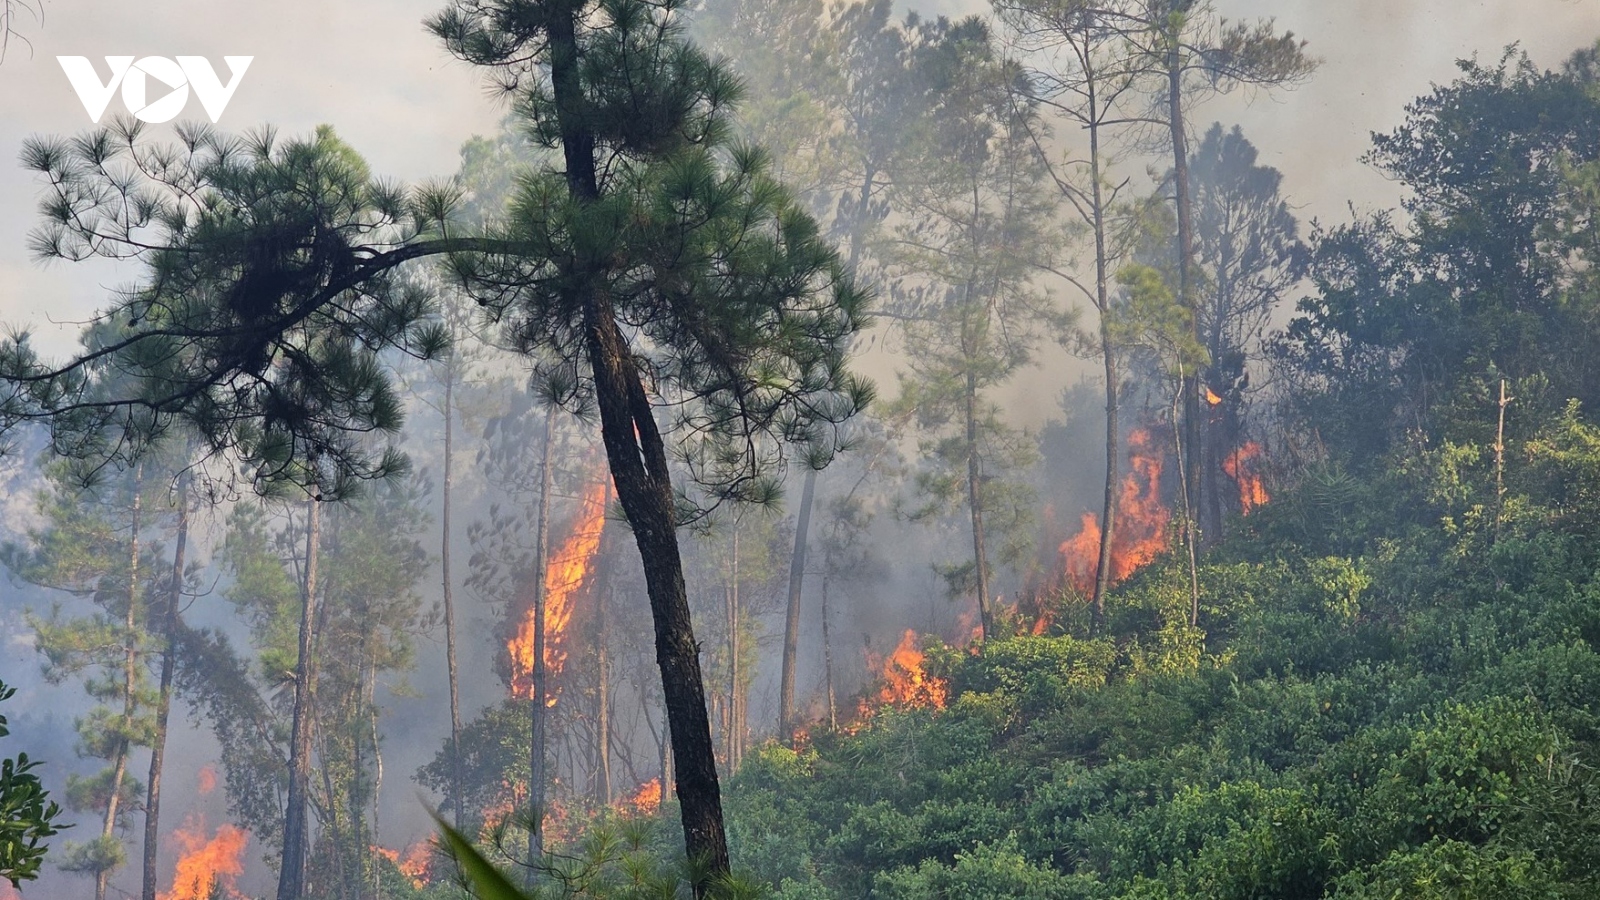 Cháy rừng thông ở Huế